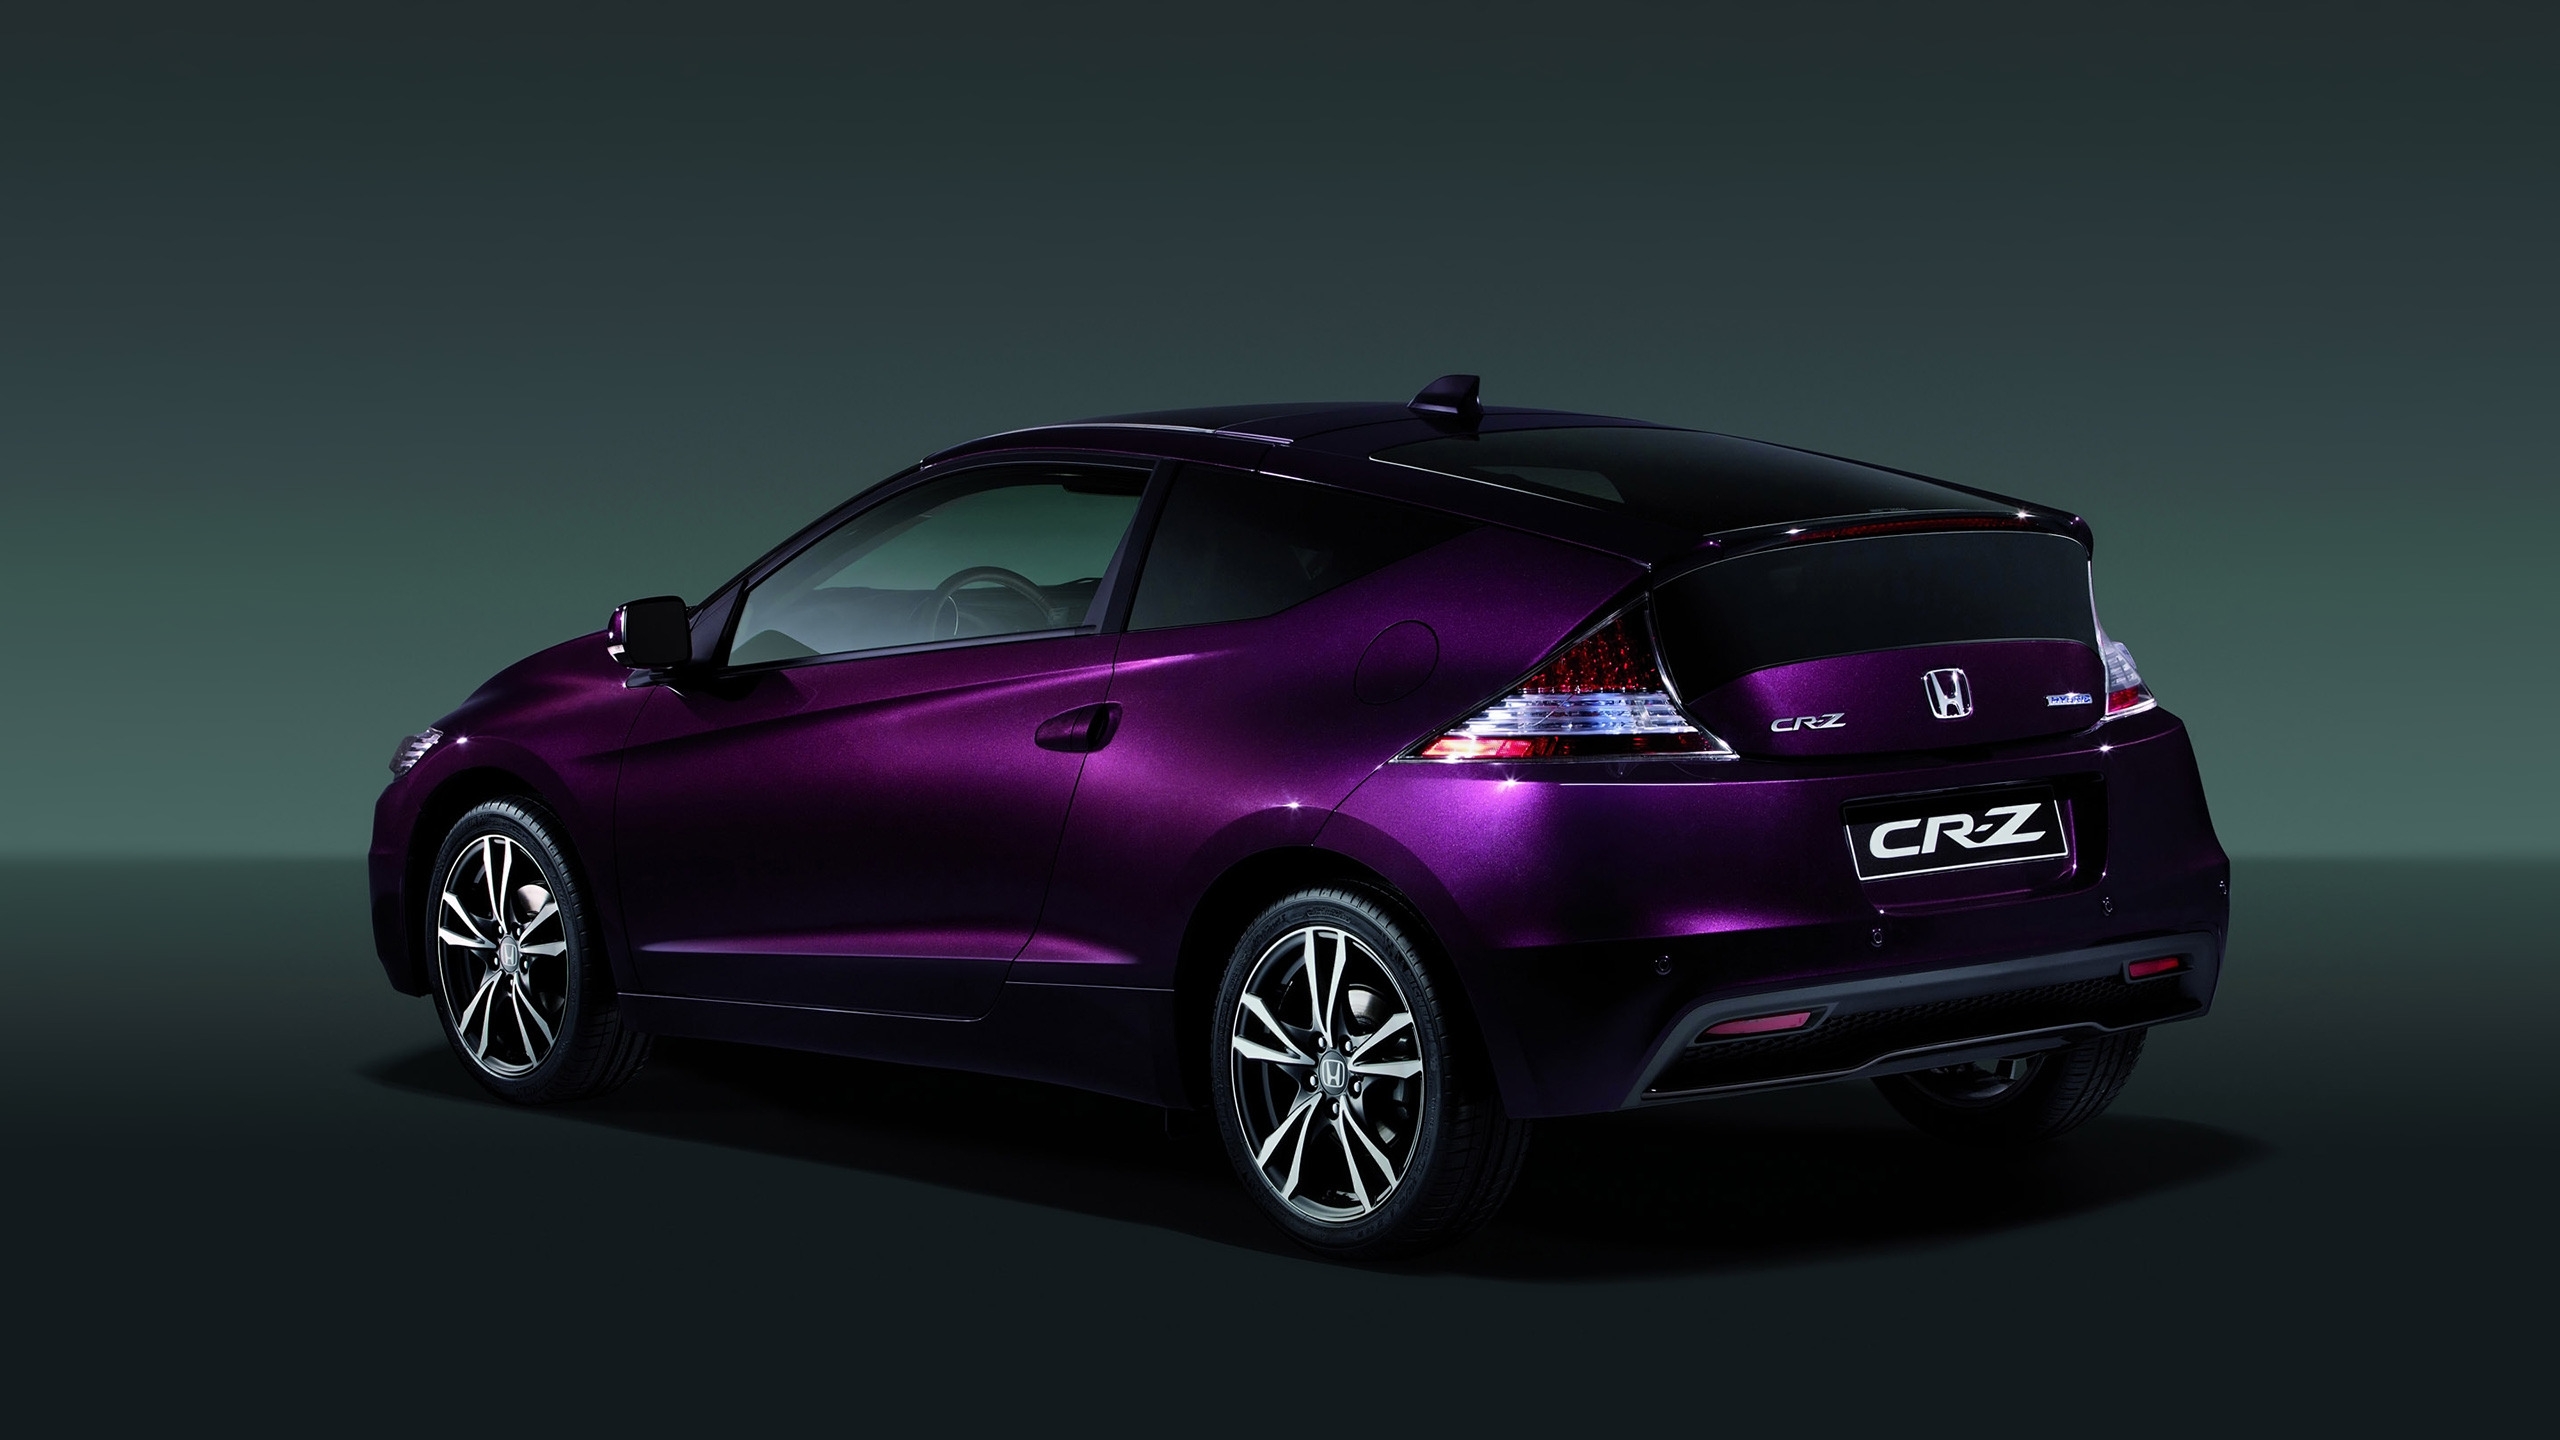 2013 Honda CR-Z Hybrid for 2560x1440 HDTV resolution